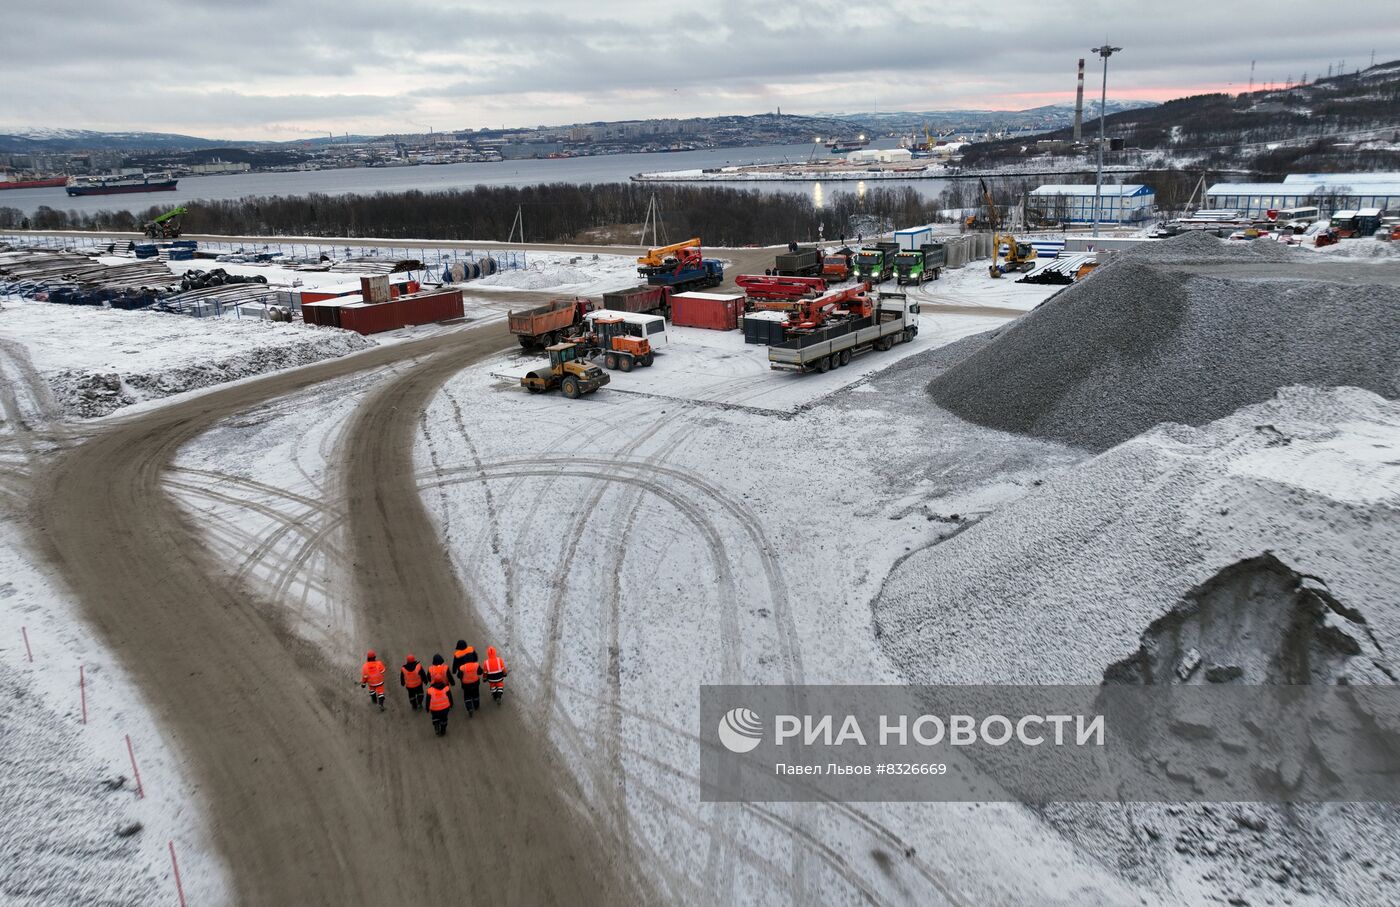 Строительство морского порта "Лавна" в Мурманской области